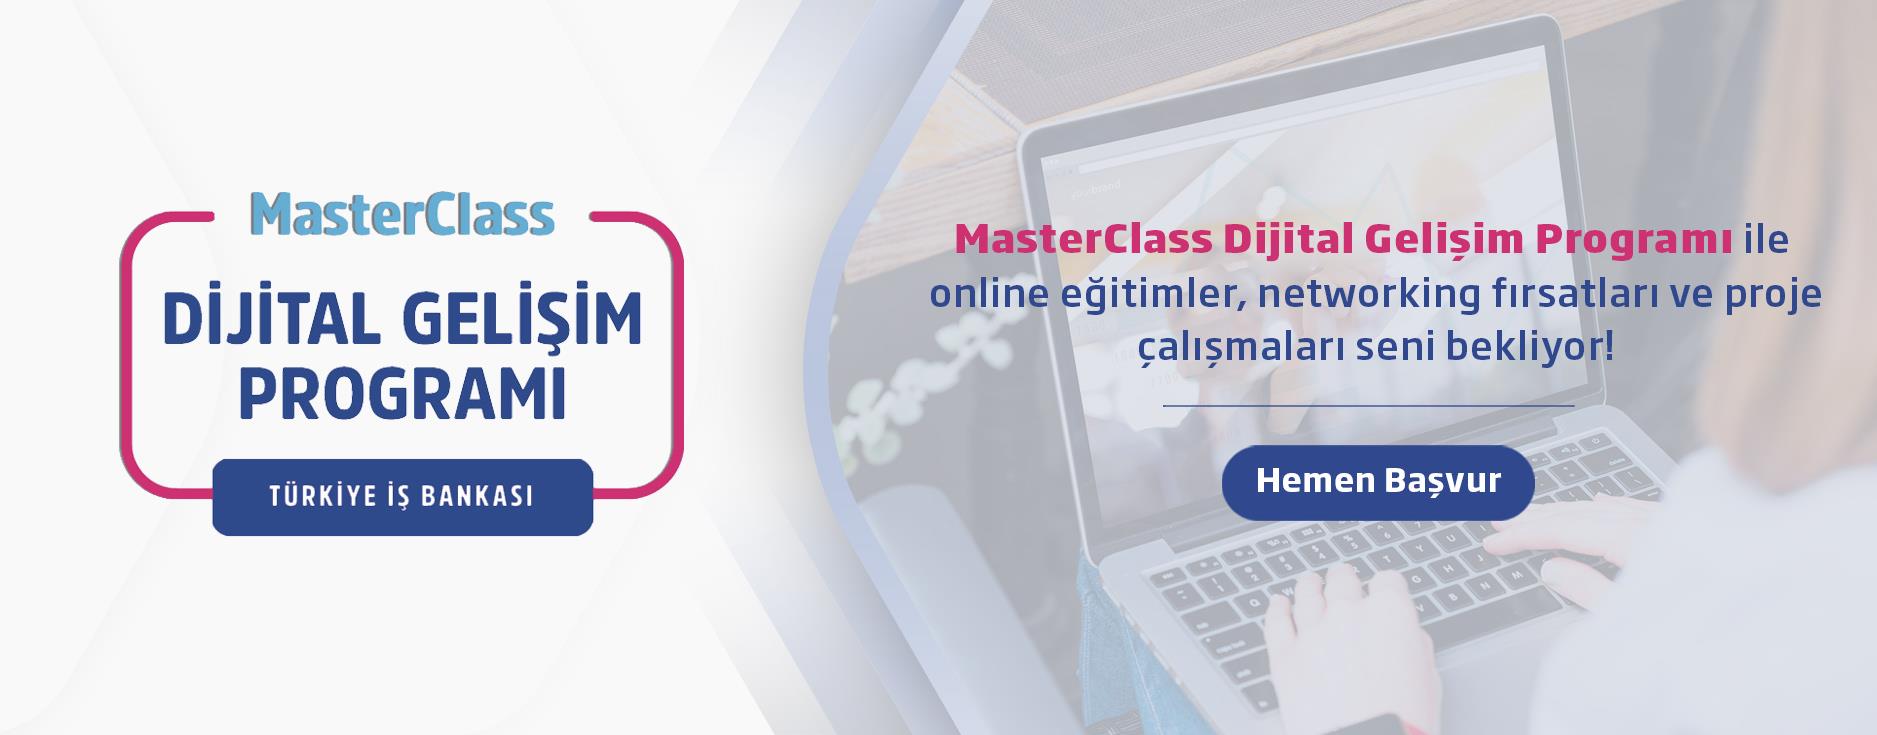 MasterClass Dijital Gelişim Programı